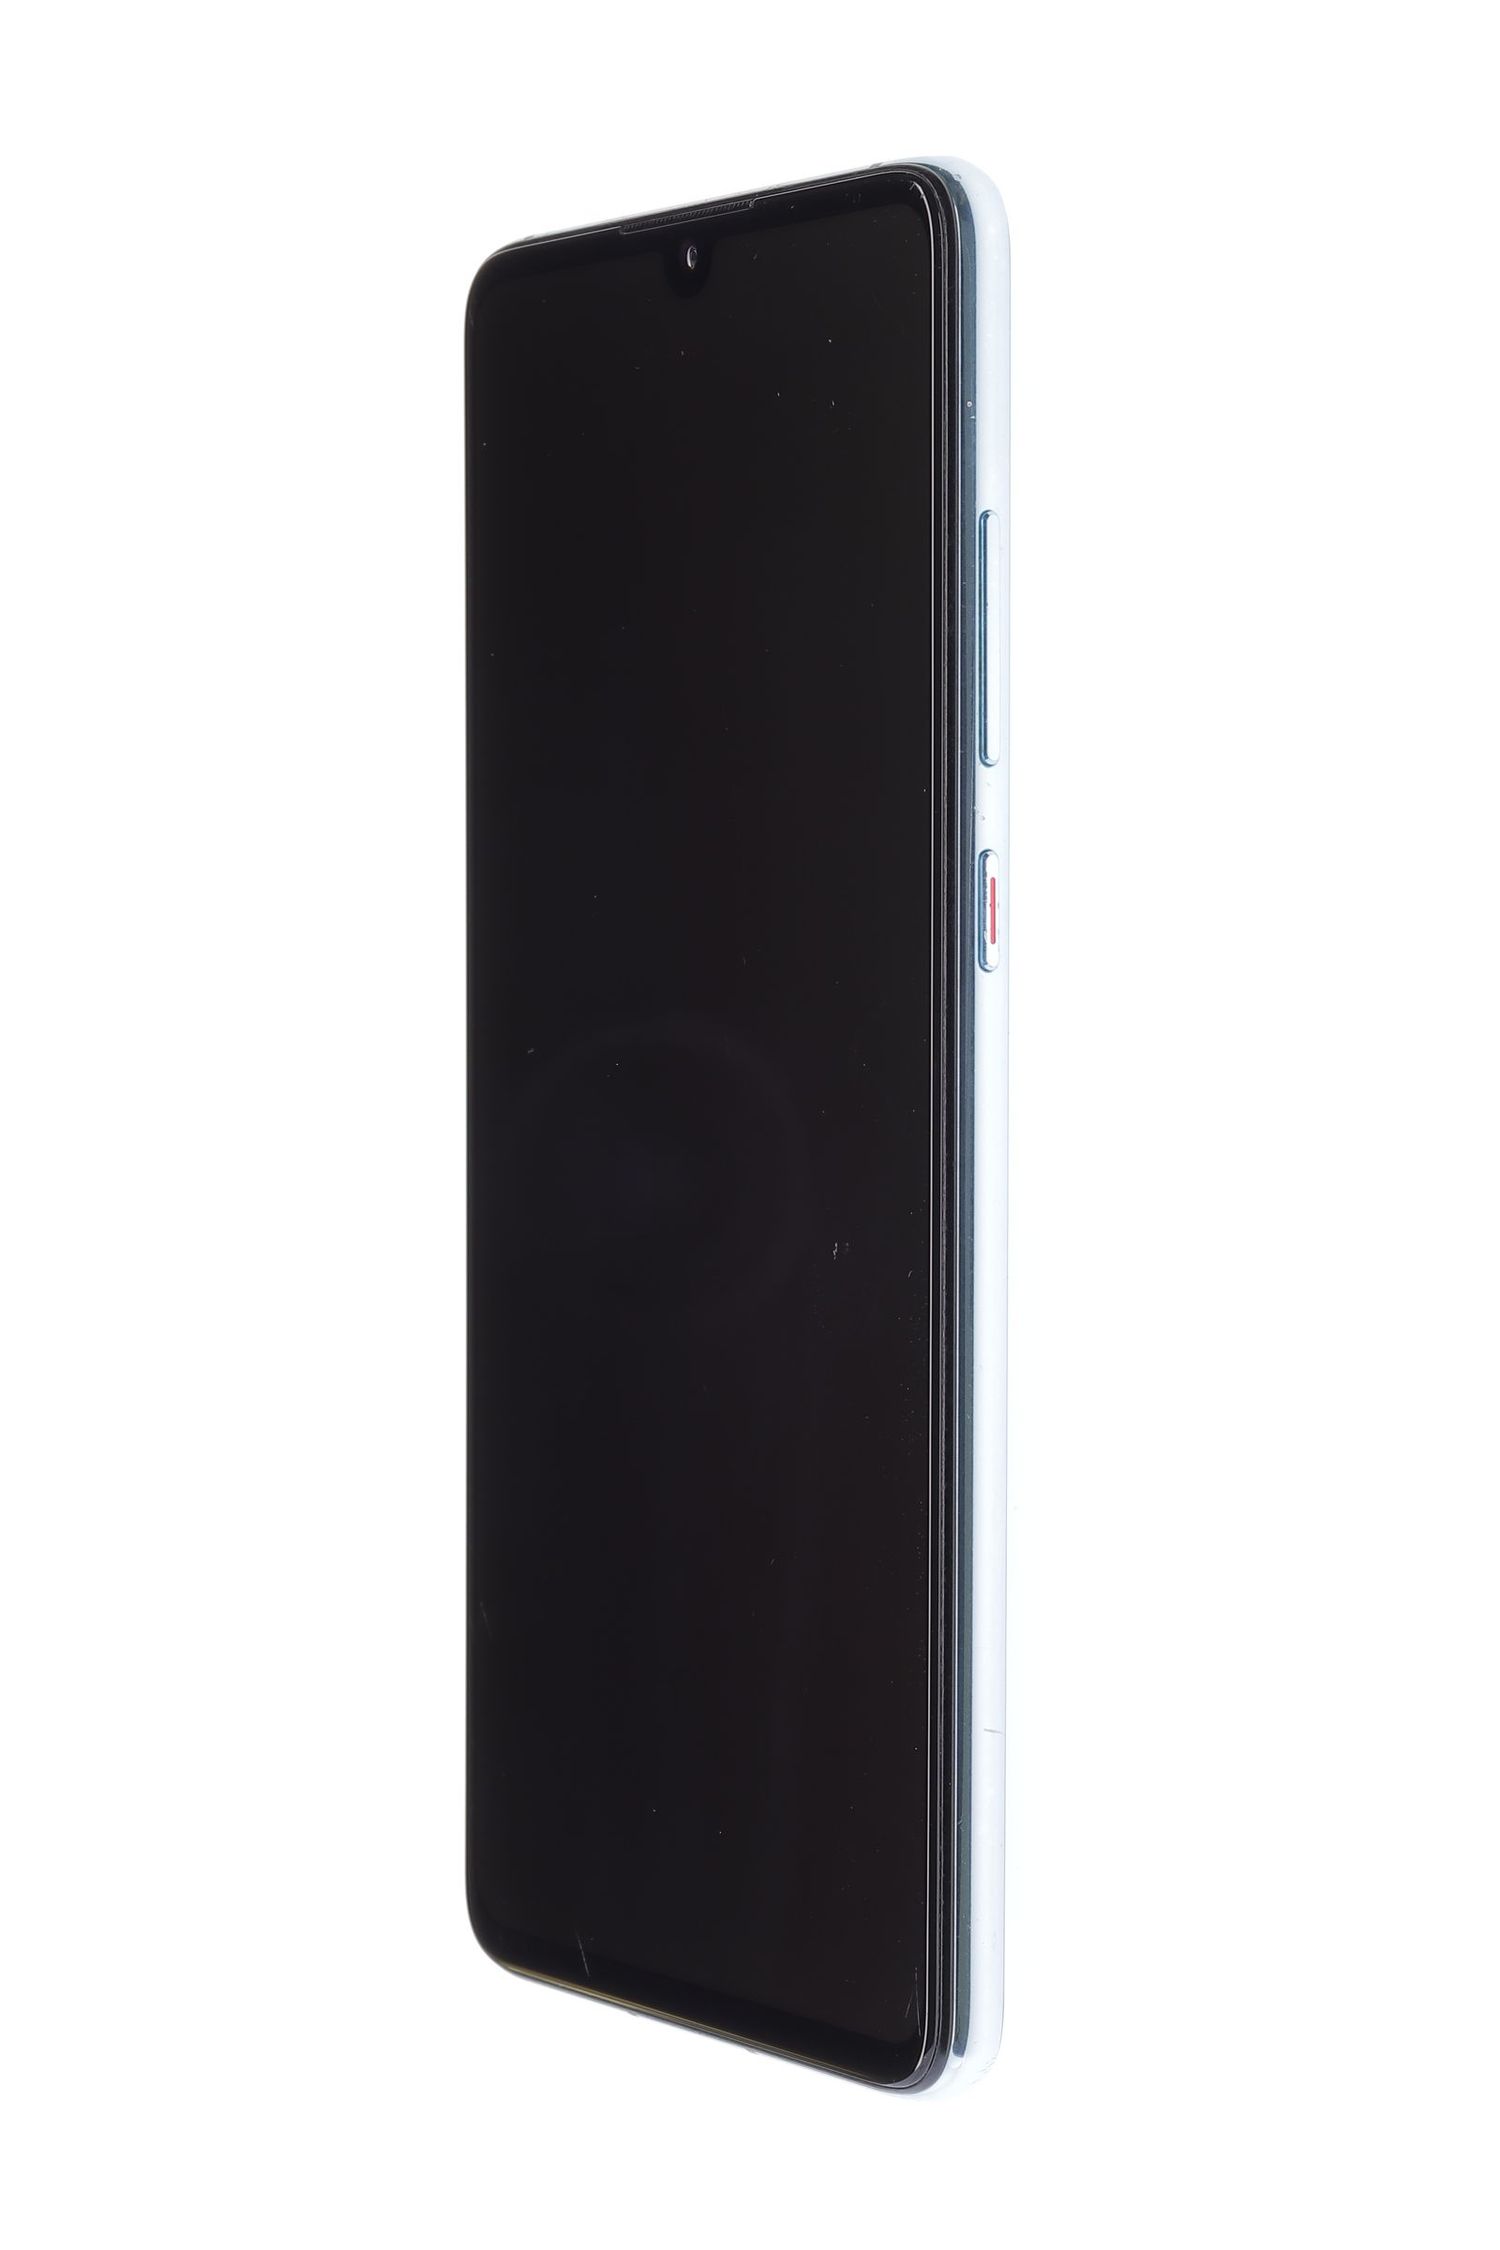 Κινητό τηλέφωνο Huawei P30, Aurora Blue, 128 GB, Foarte Bun